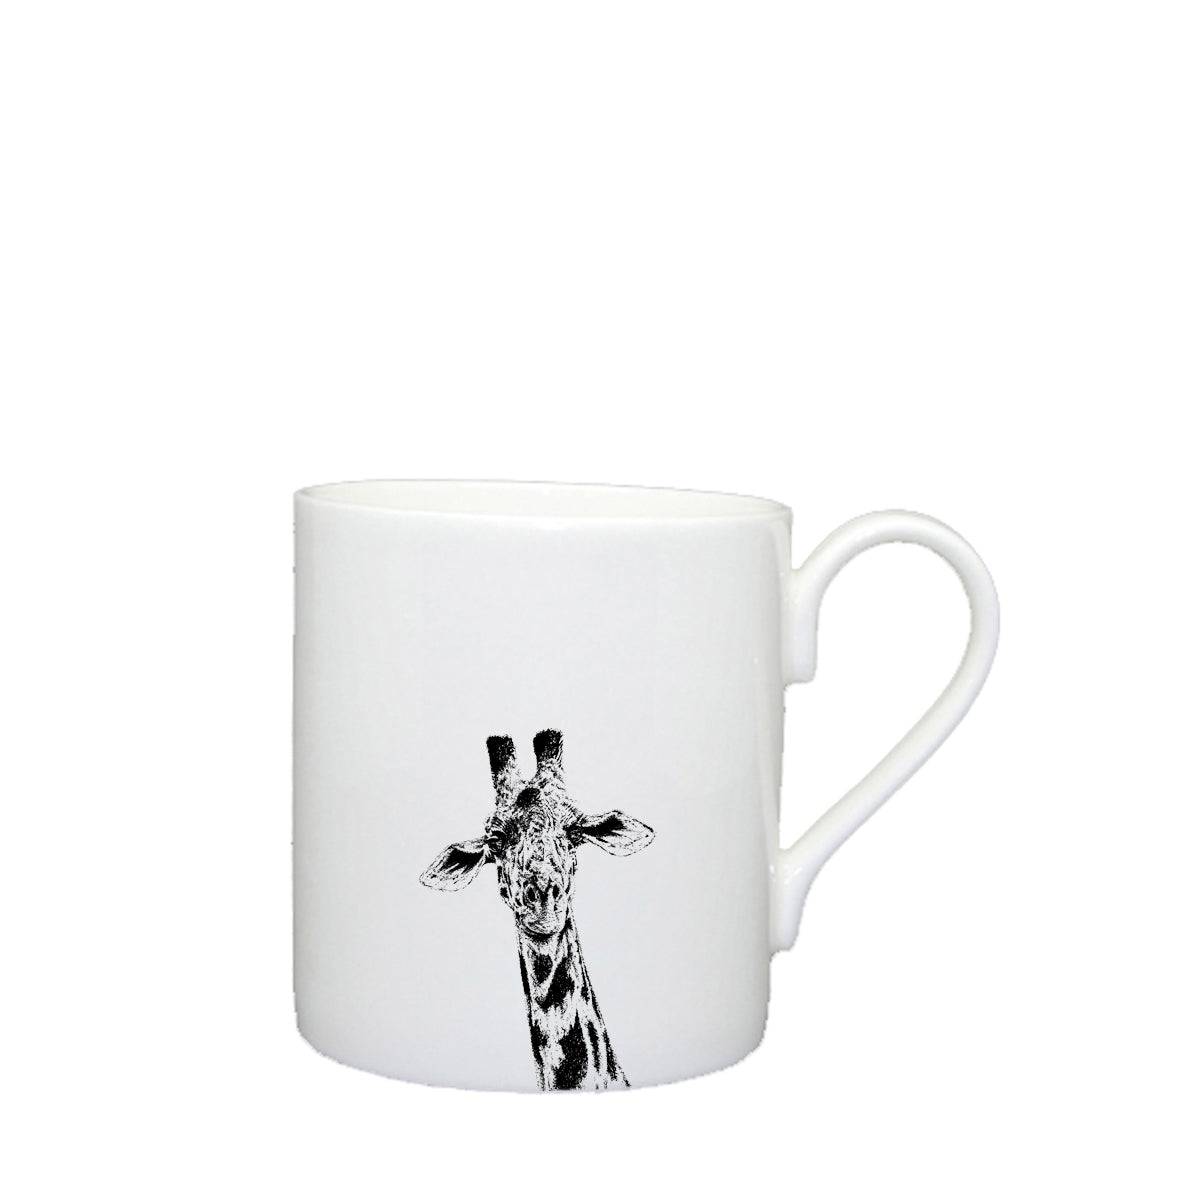 Giraffe Mug - Large for sale - Woodcock and Cavendish